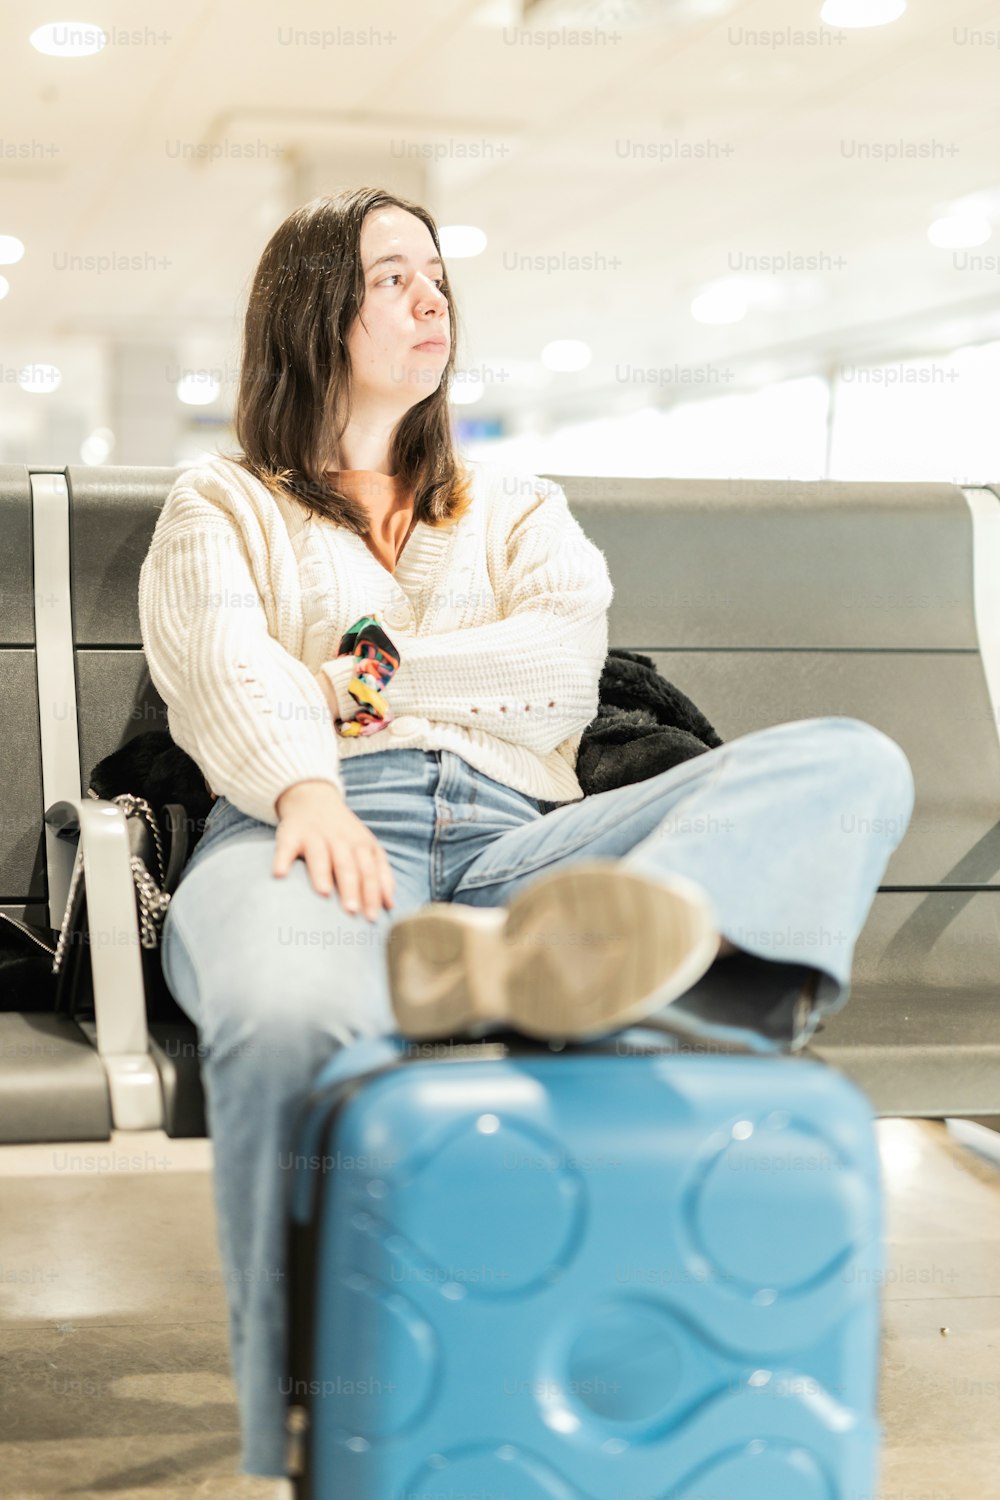 青いスーツケースの隣のベンチに座っている女性